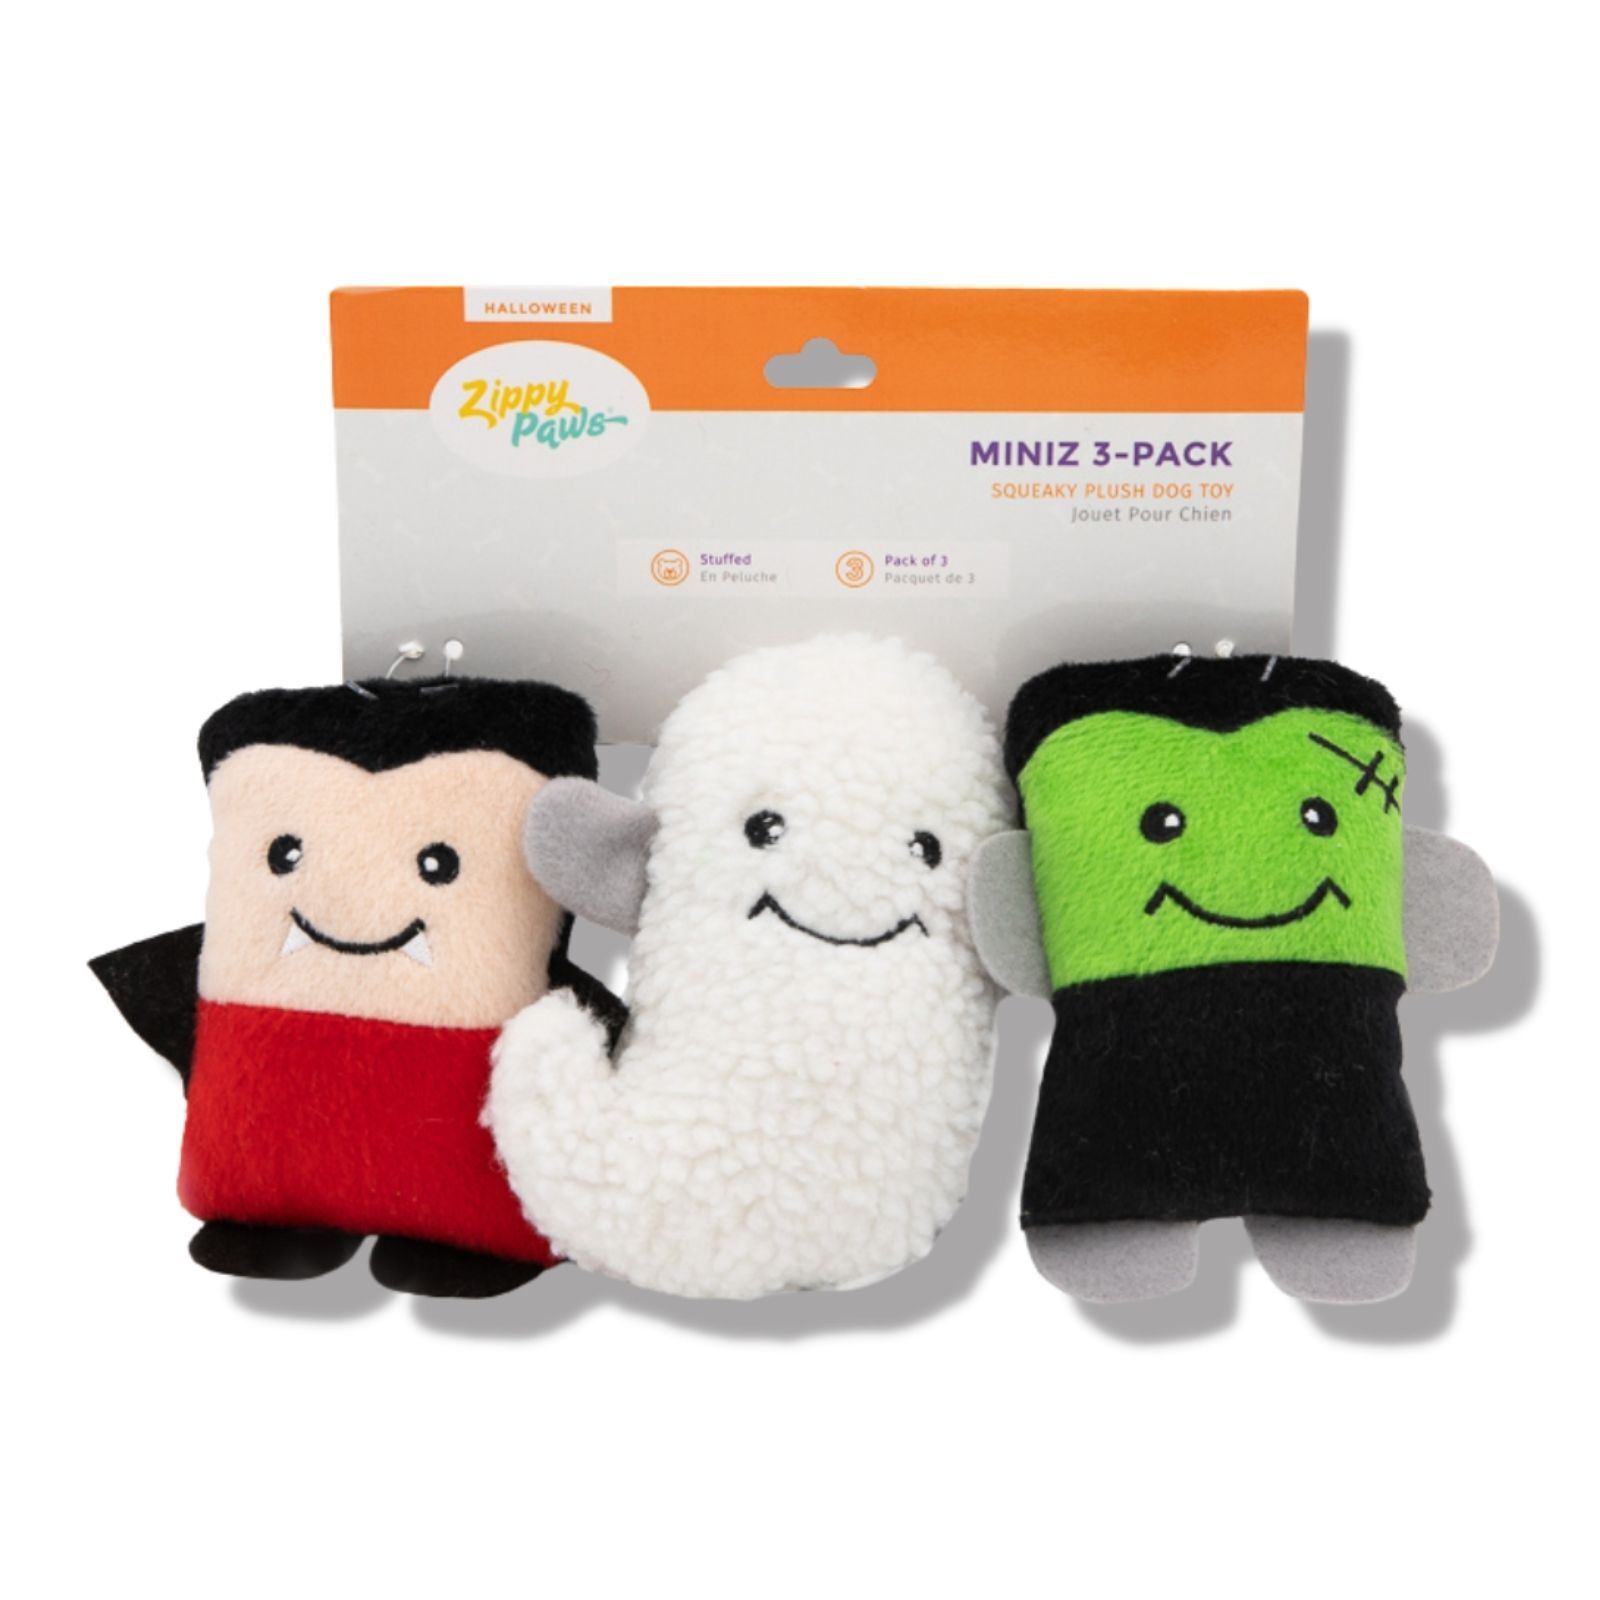 ZippyPaws Halloween Miniz  Monsters 3 Pack  |  Mini Squeaky Plush Toy Set